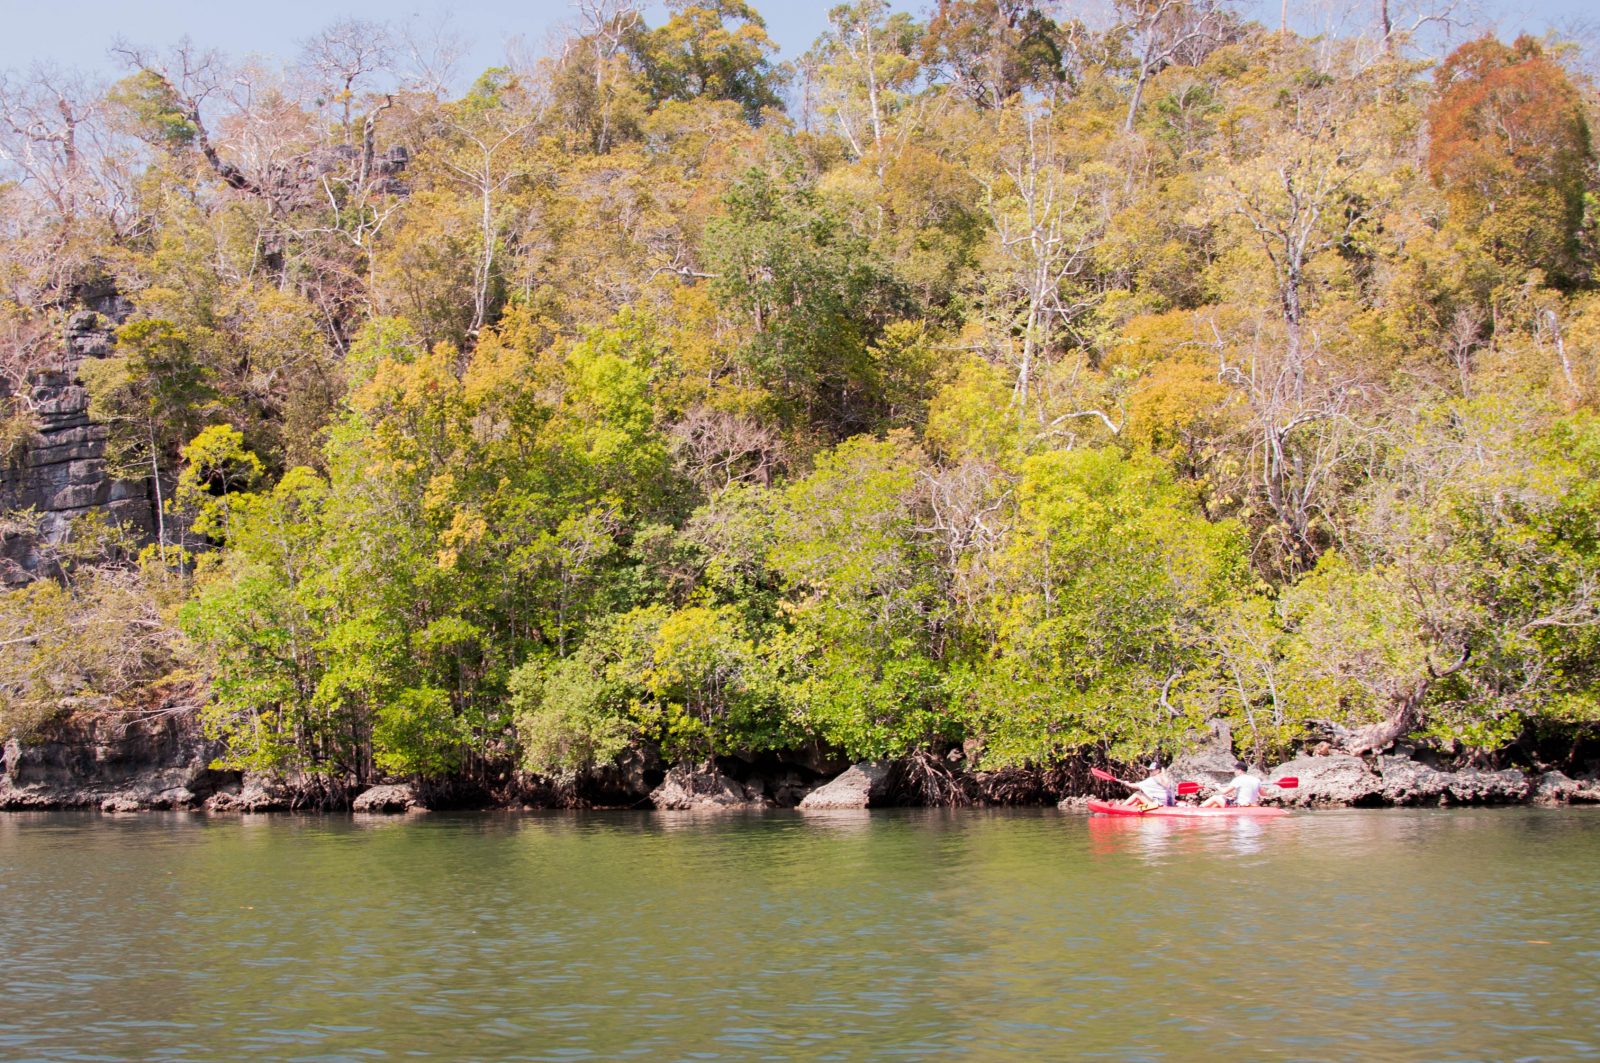 Lucka s Adamom pádlujú a nazerajú medzi vzdušné korene mangrovníkov.